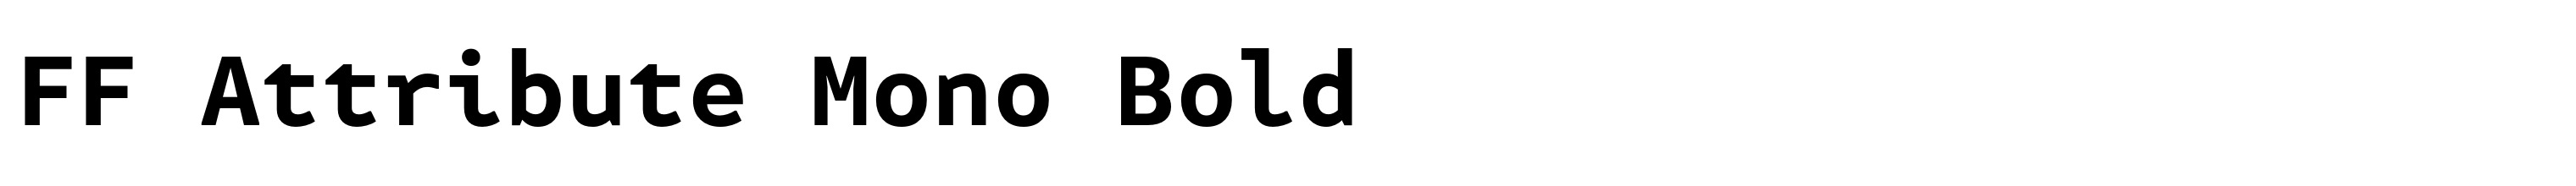 FF Attribute Mono Bold